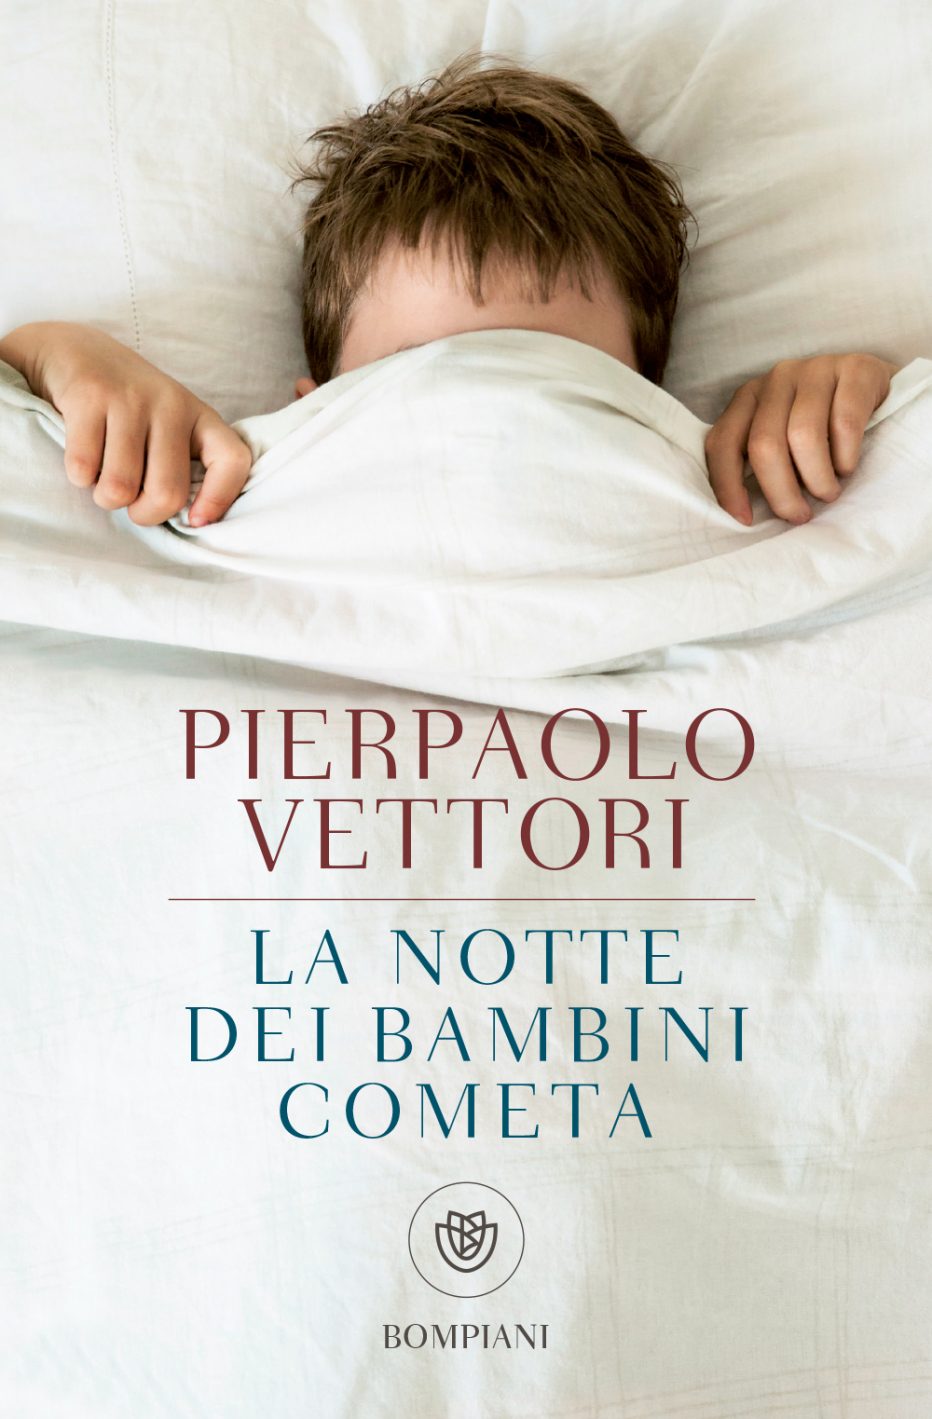 “La notte dei bambini cometa” intervista a Pierpaolo Vettori